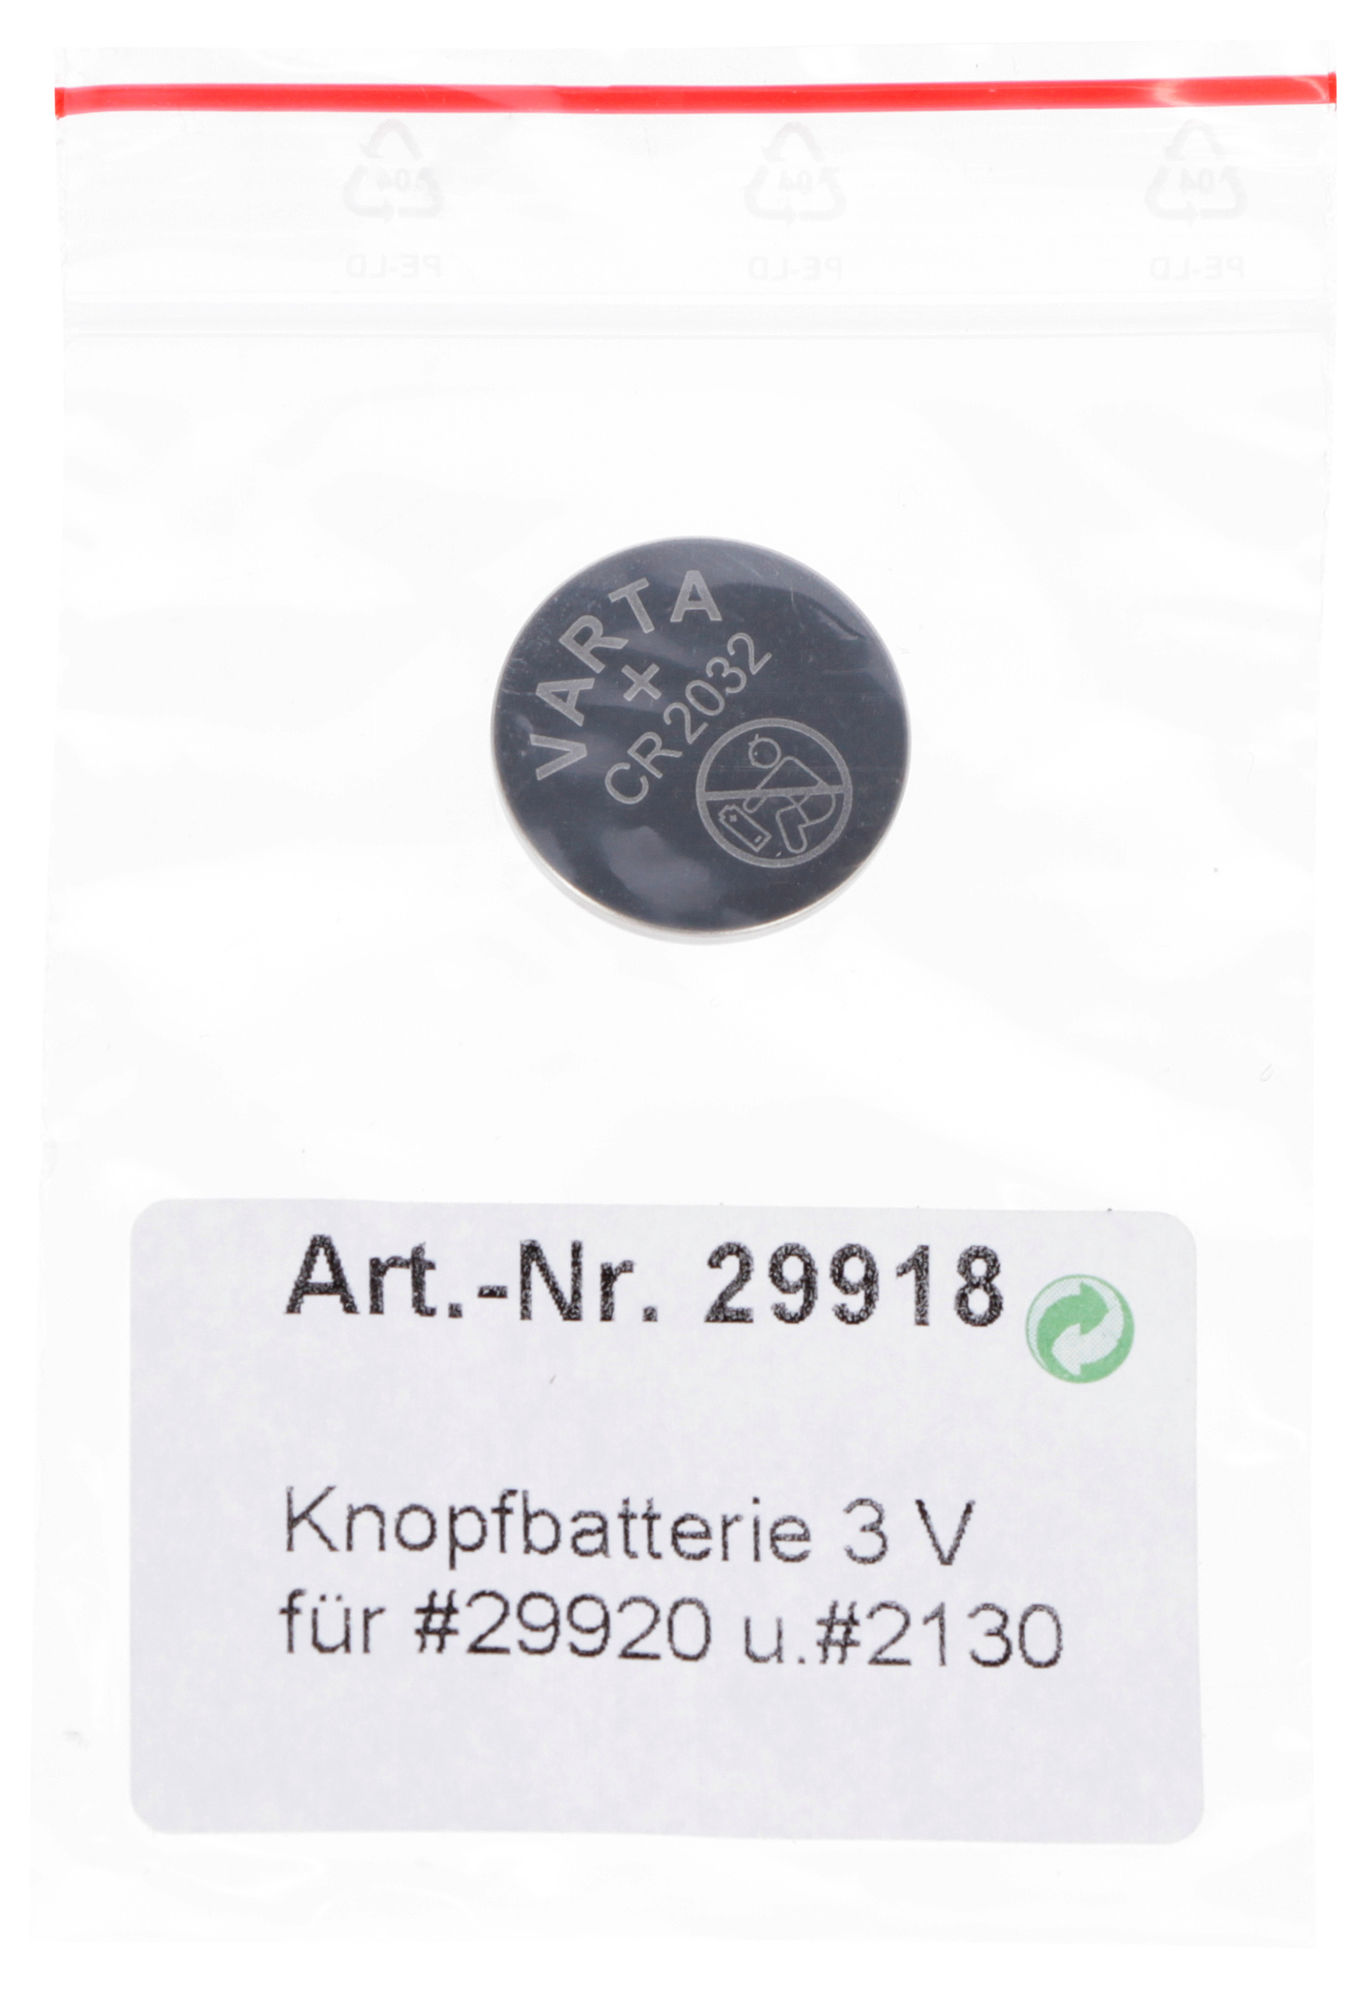 Knopfbatterie 3V für #29920 und #2130 # 2138